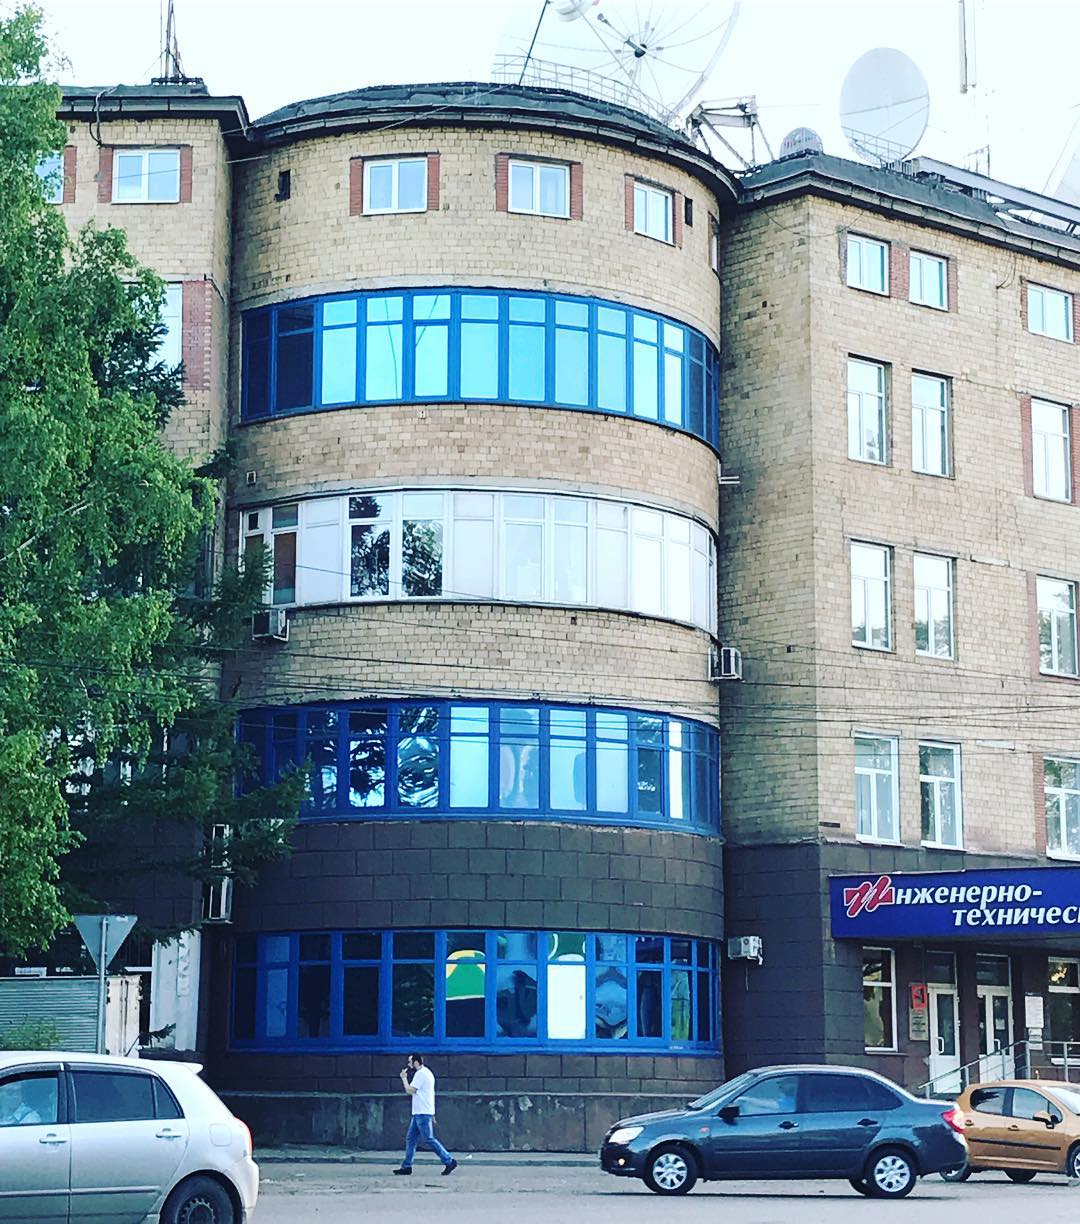 Красноярский архитектор по окнам определил характер владельцев недвижимости